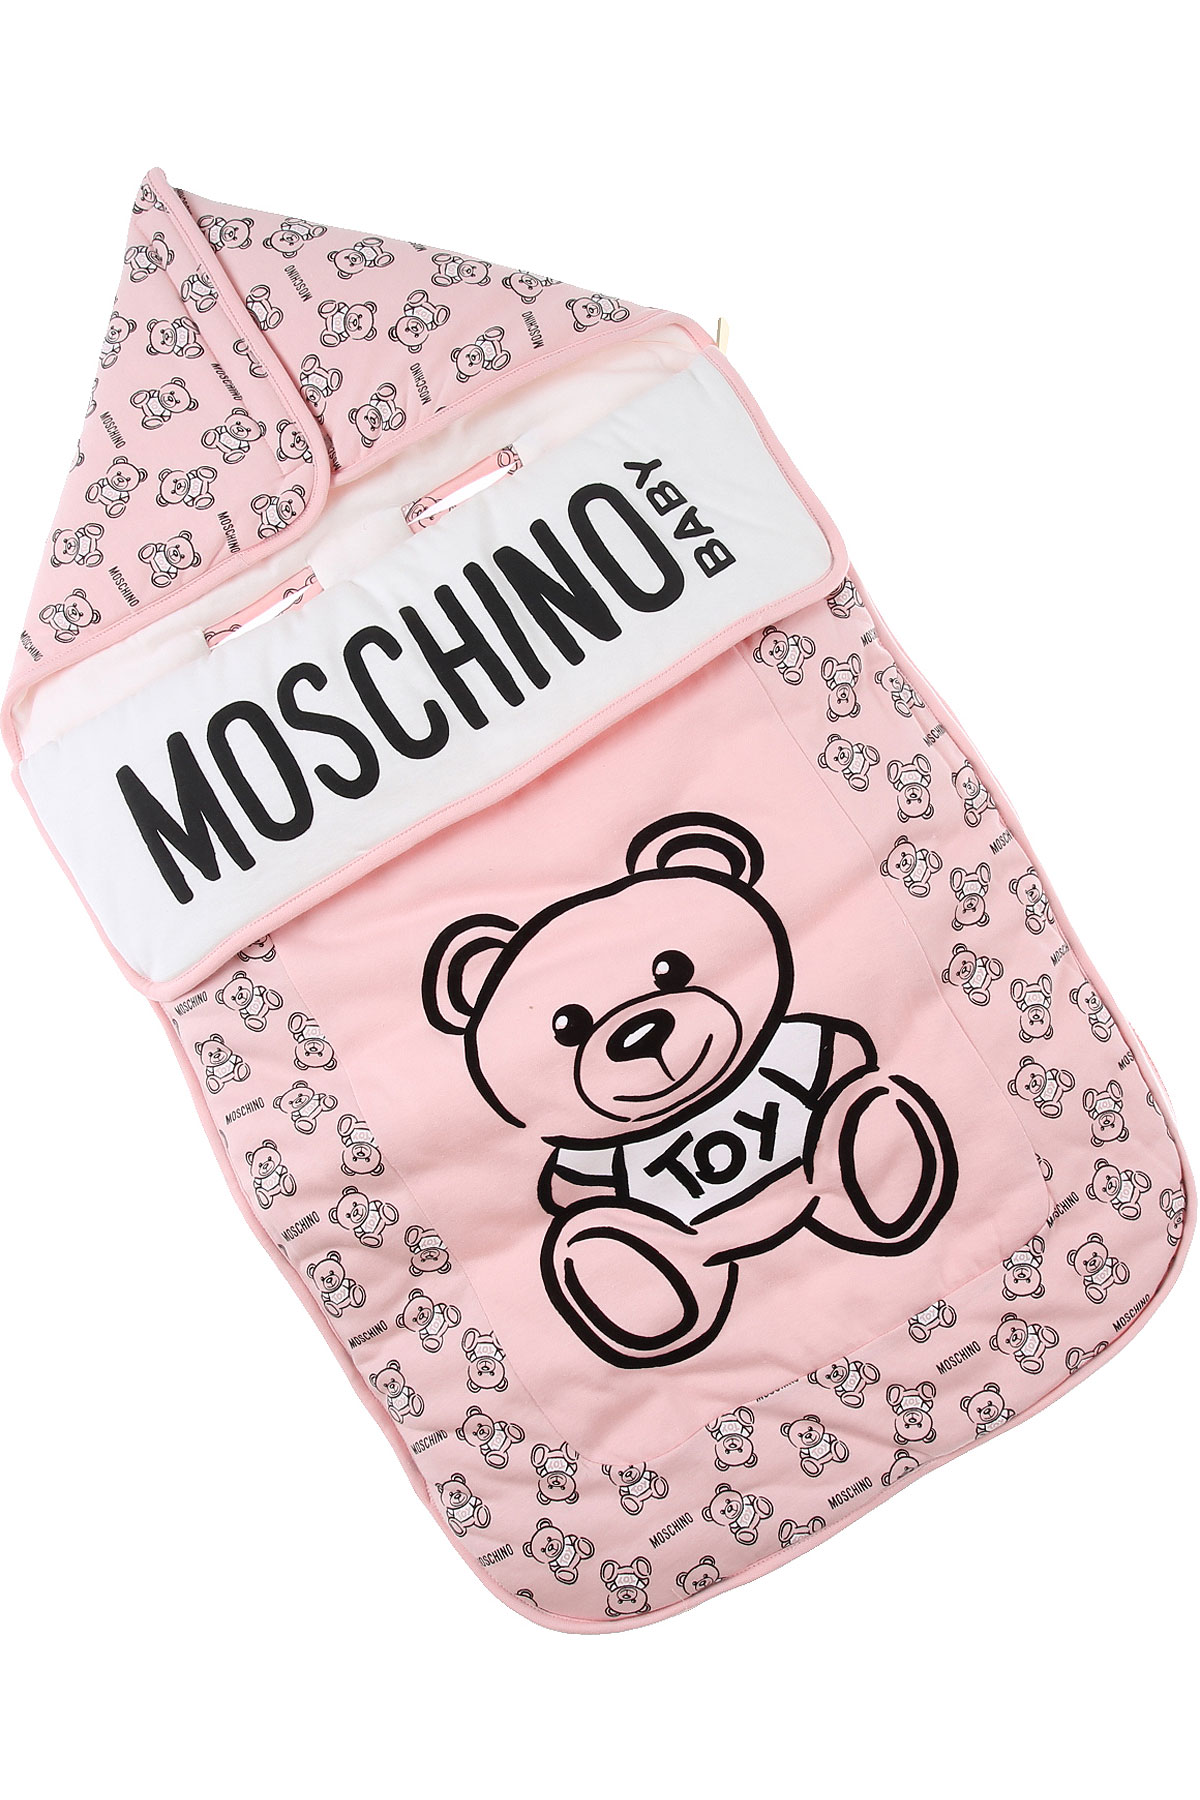 Moschino Baby Body & Strampelanzug für Mädchen Günstig im Sale, Pink, Terracotto-Fliesen, 2017